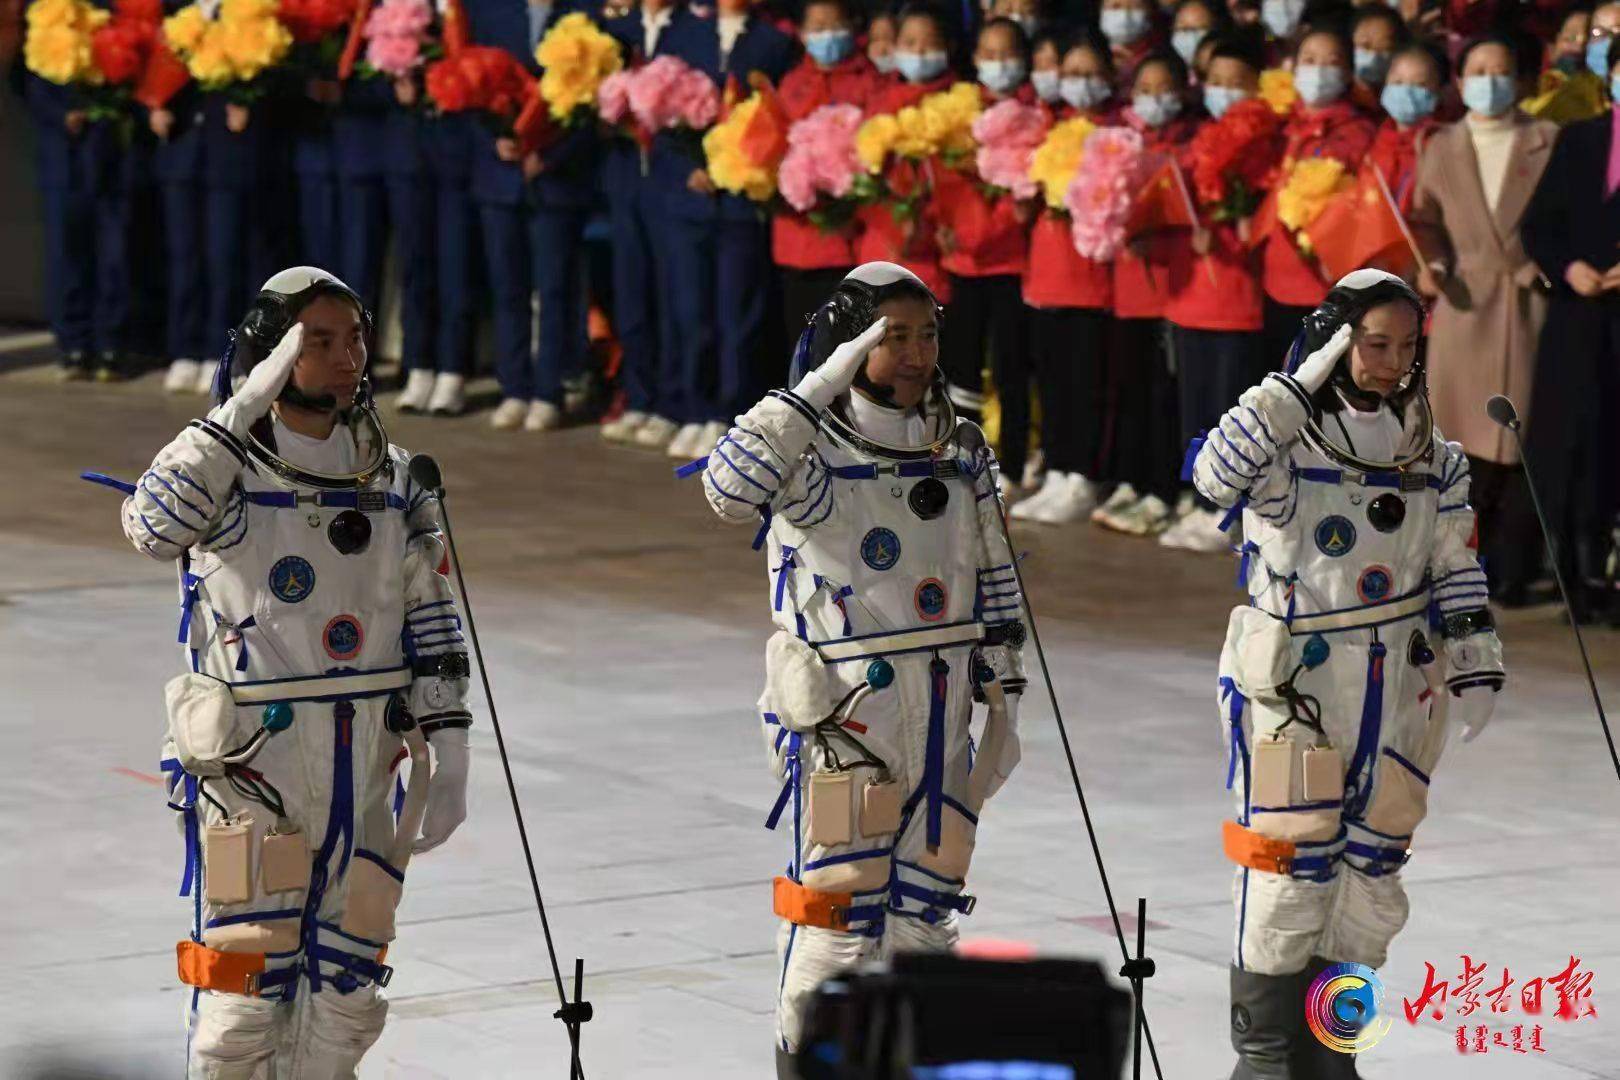 神舟尊龙凯时人生就是博十三号乘组在轨飞行183天创造中国航天员最长纪录